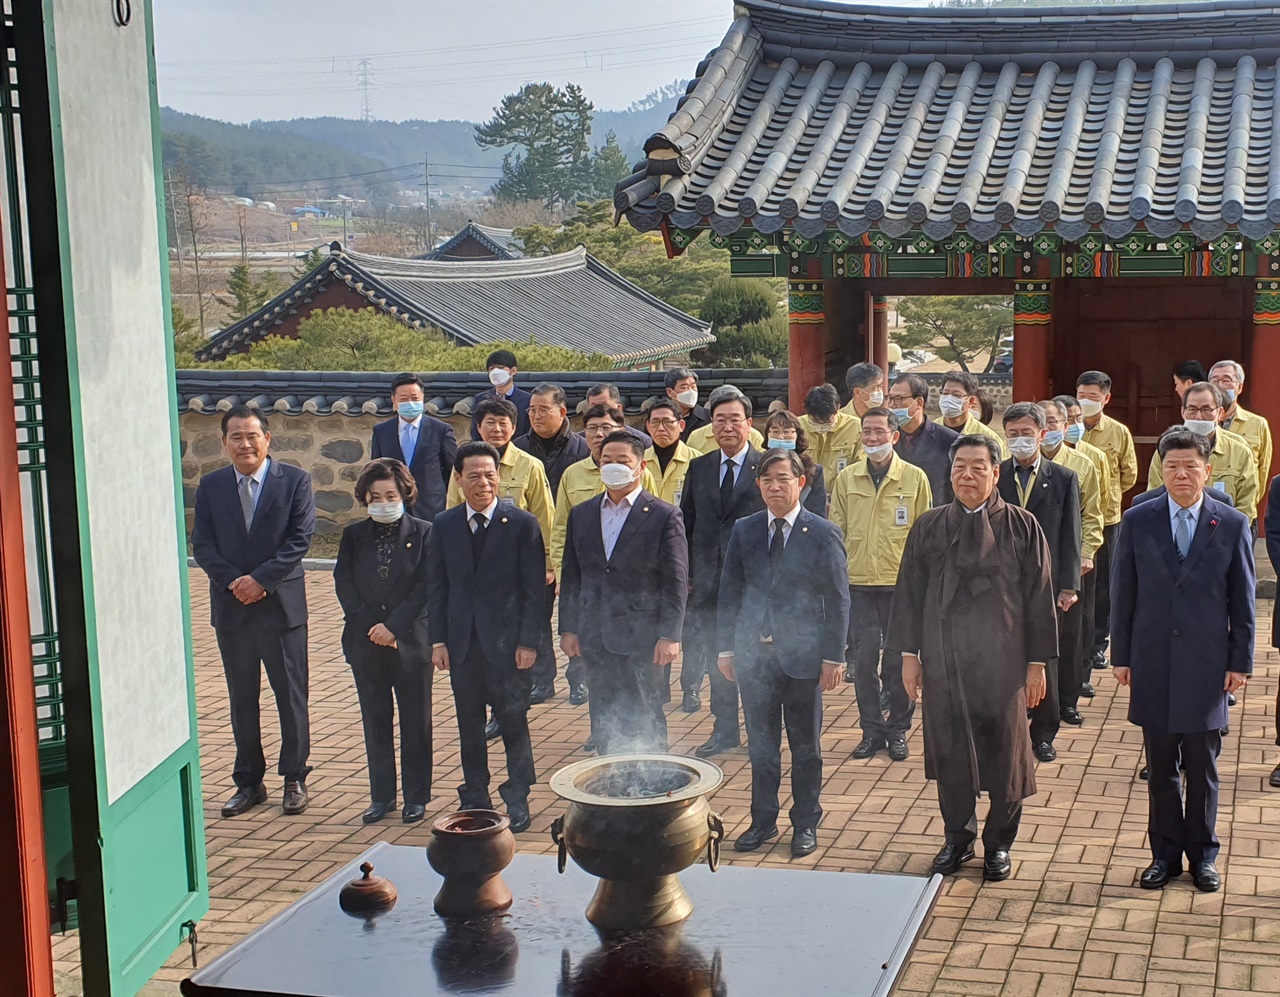 참배하기 전, 오른쪽부터 박용성 부의장, 가세로 태안군수, 김기두 의장, 김영인, 송낙문, 전재옥 의원